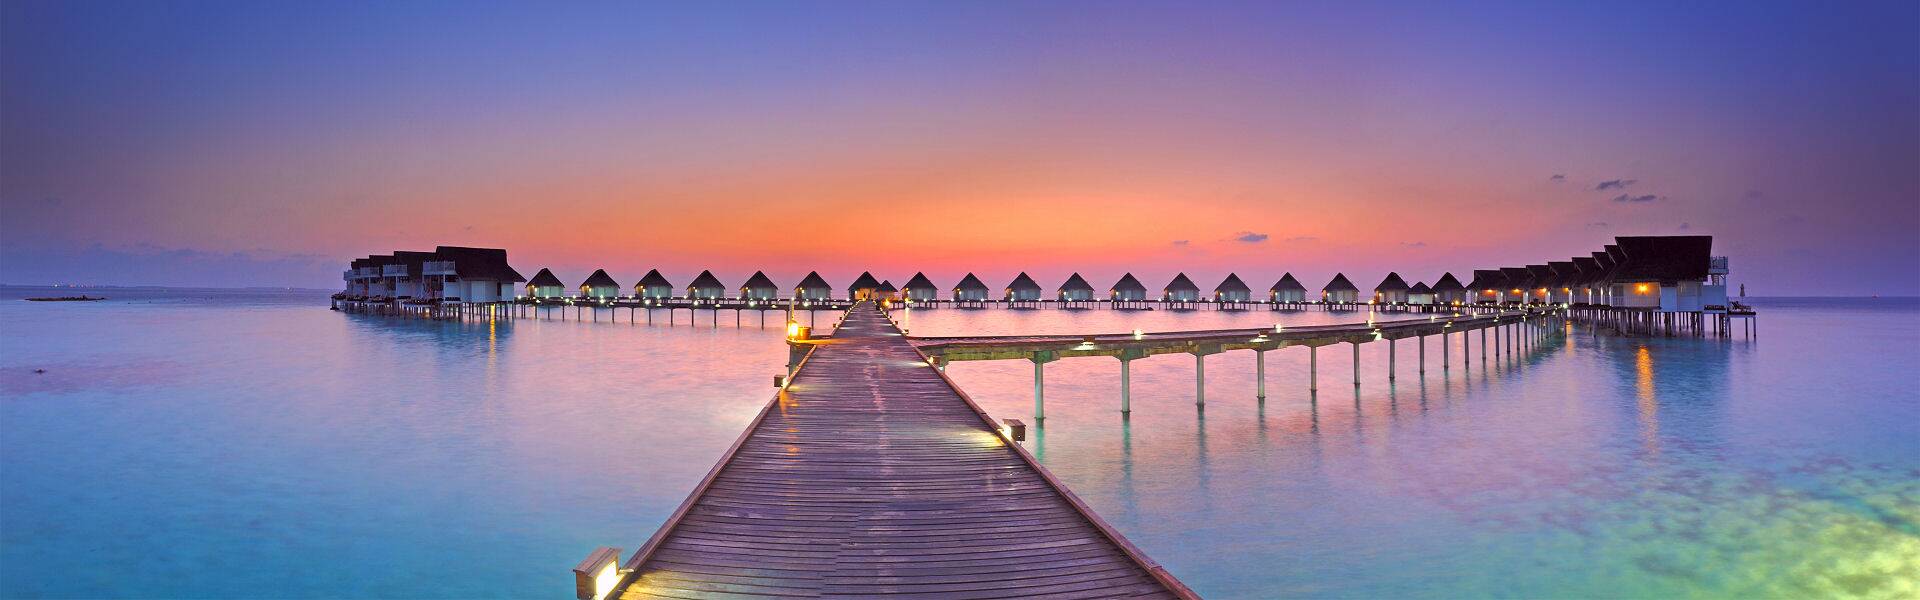 Malediven Urlaub - Urlaubsparadies Malediven - Inspirationen für Ihre Malediven Reise